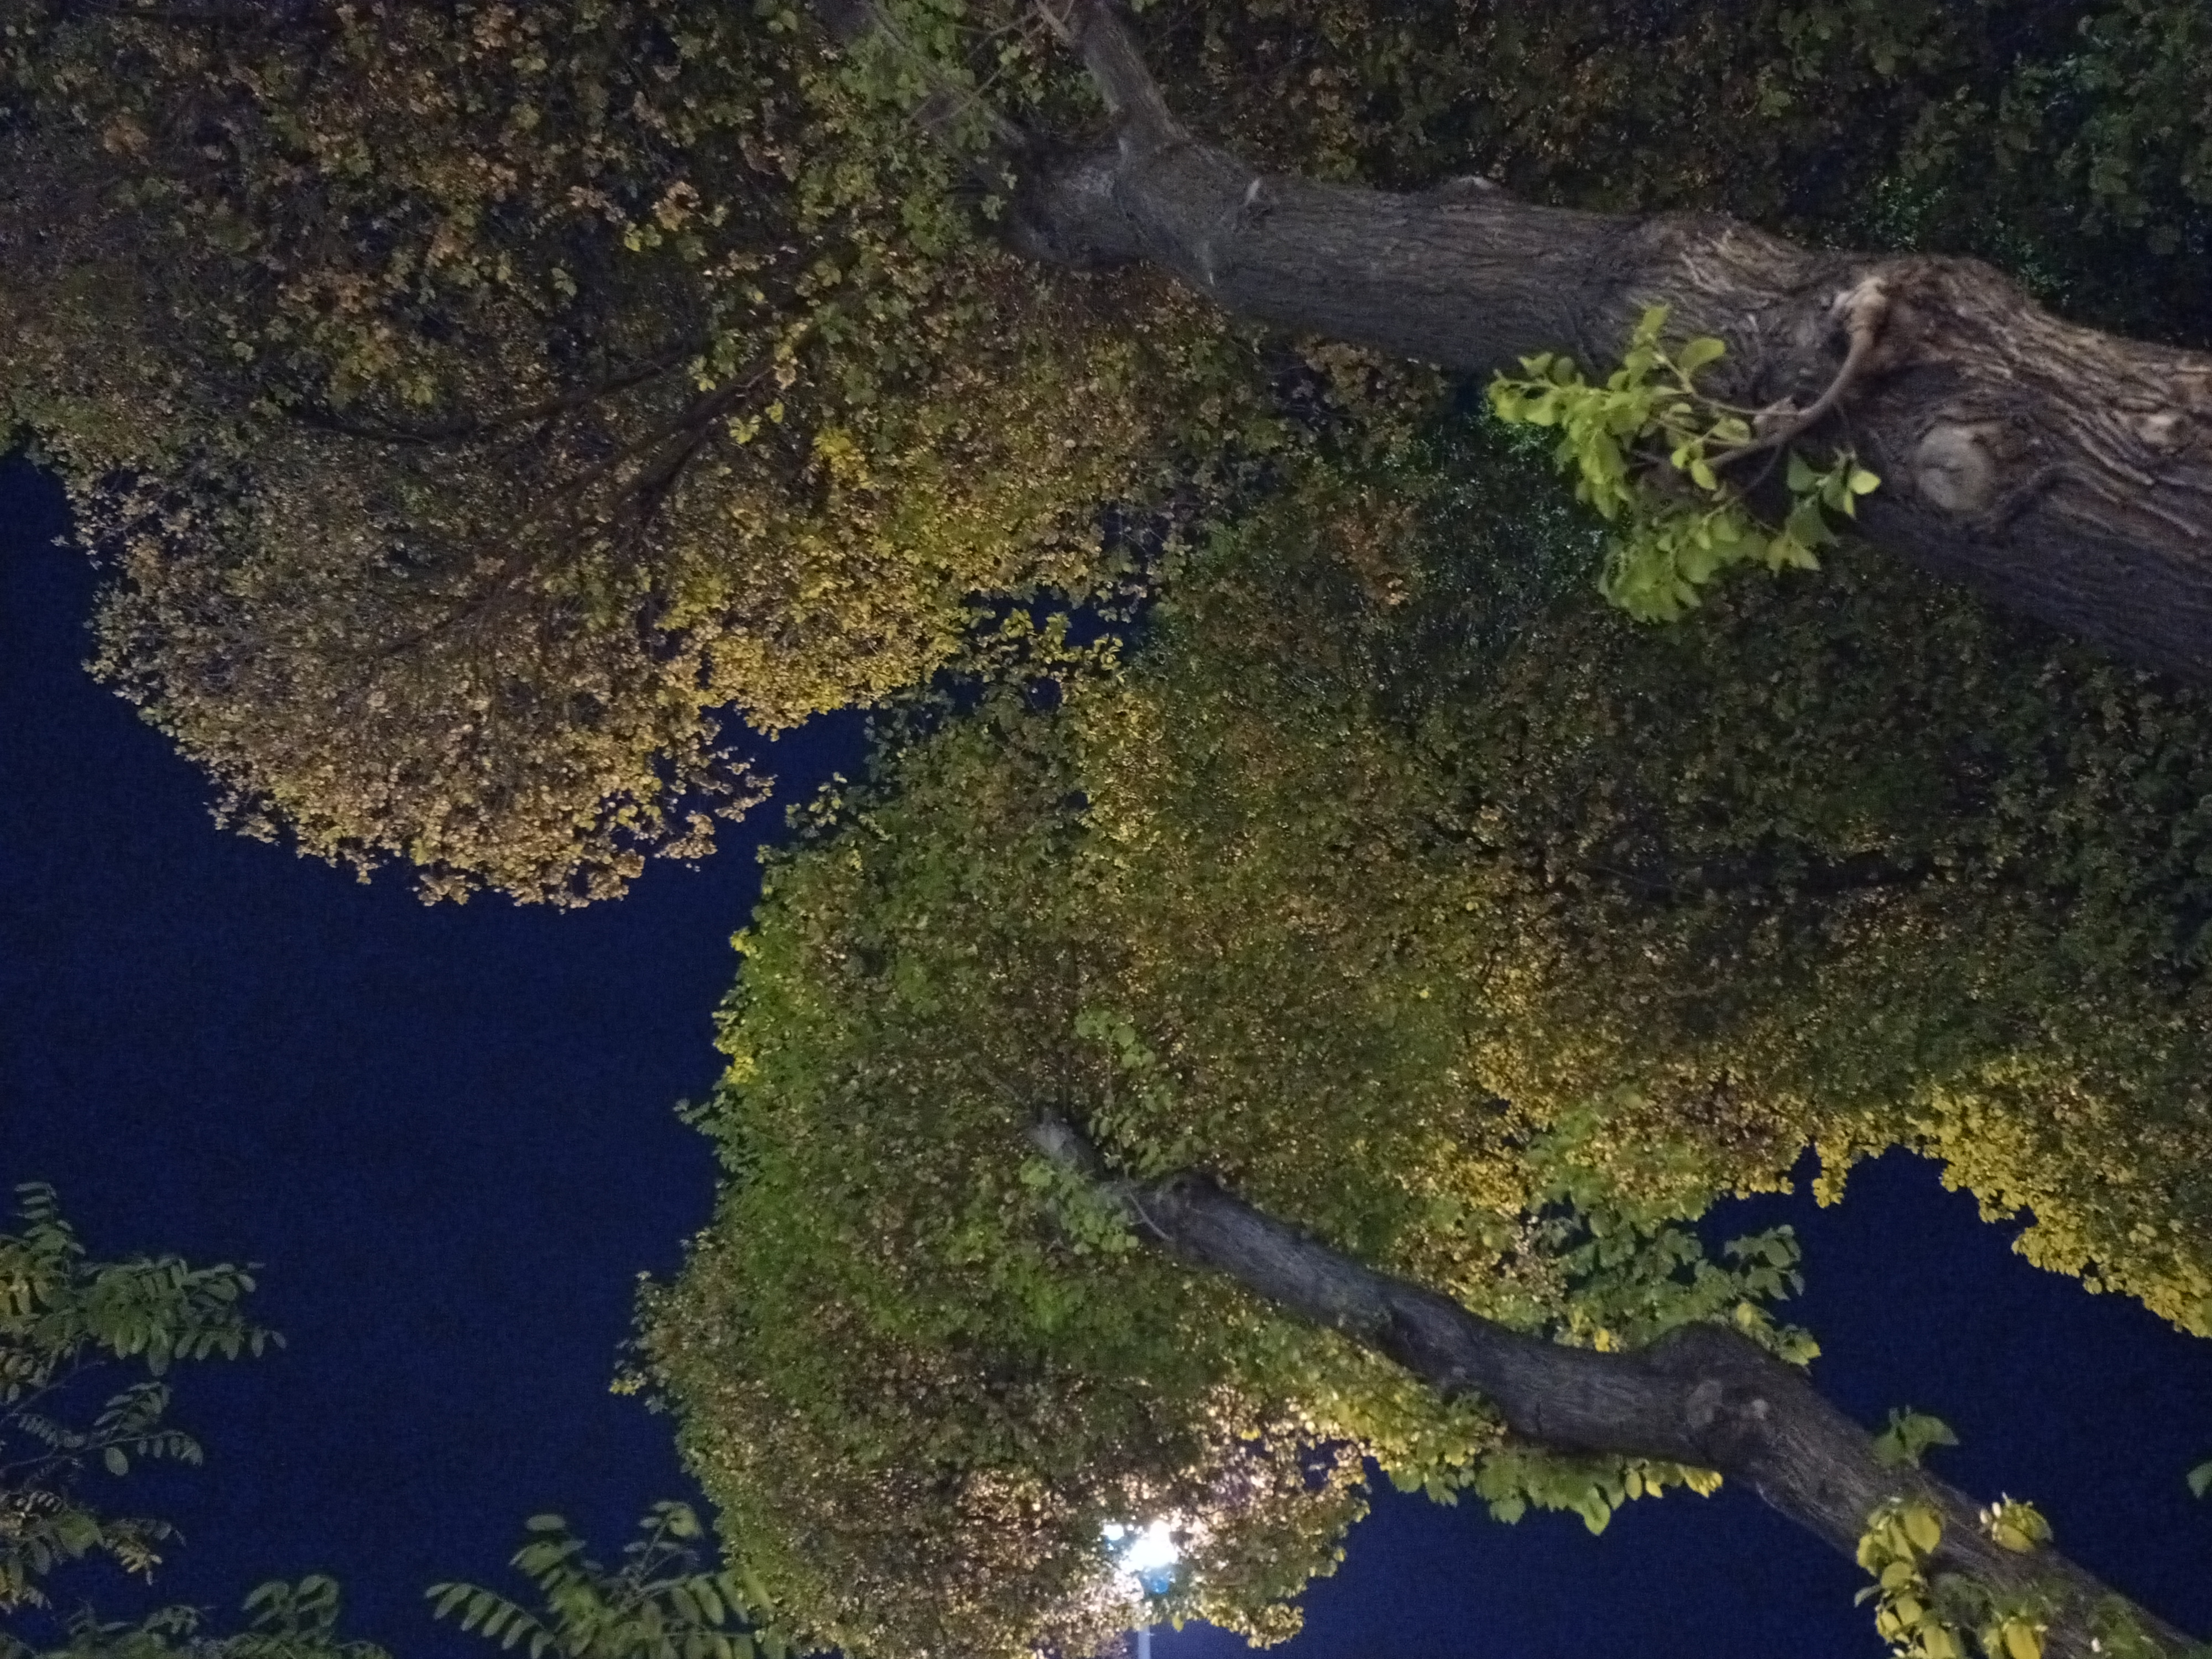 عکس نمونه دوربین اصلی ال جی K61 در نور کم - درختانی در میدان هفت حوض